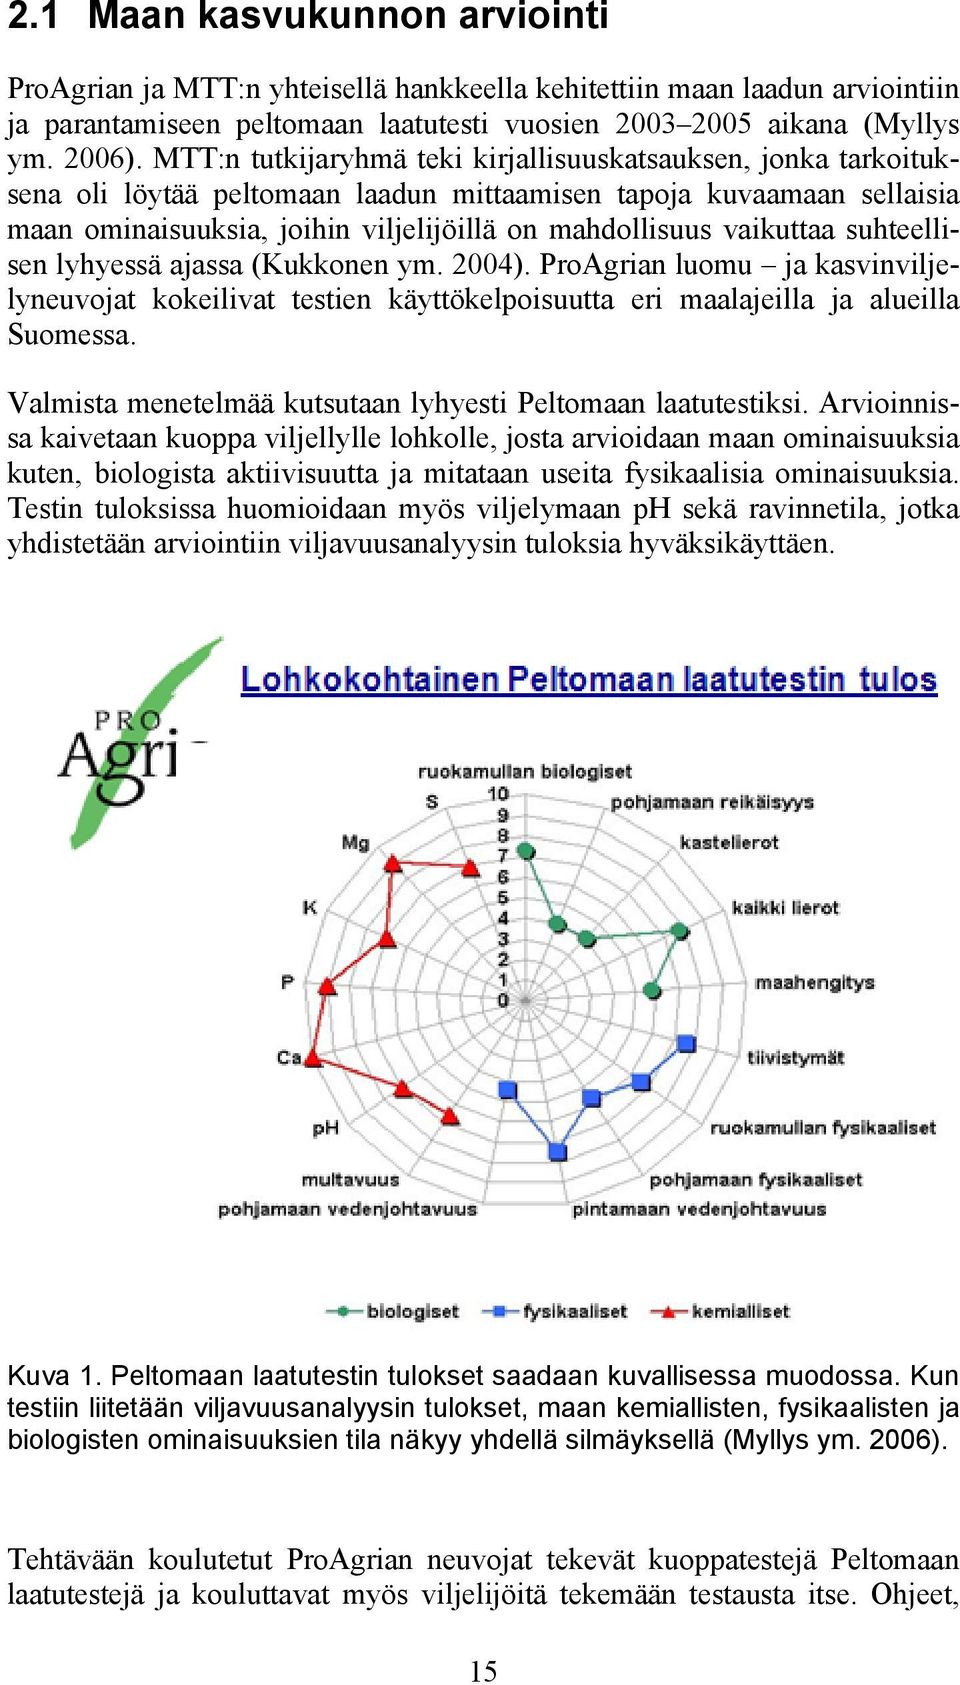 vaikuttaa suhteellisen lyhyessä ajassa (Kukkonen ym. 2004). ProAgrian luomu ja kasvinviljelyneuvojat kokeilivat testien käyttökelpoisuutta eri maalajeilla ja alueilla Suomessa.